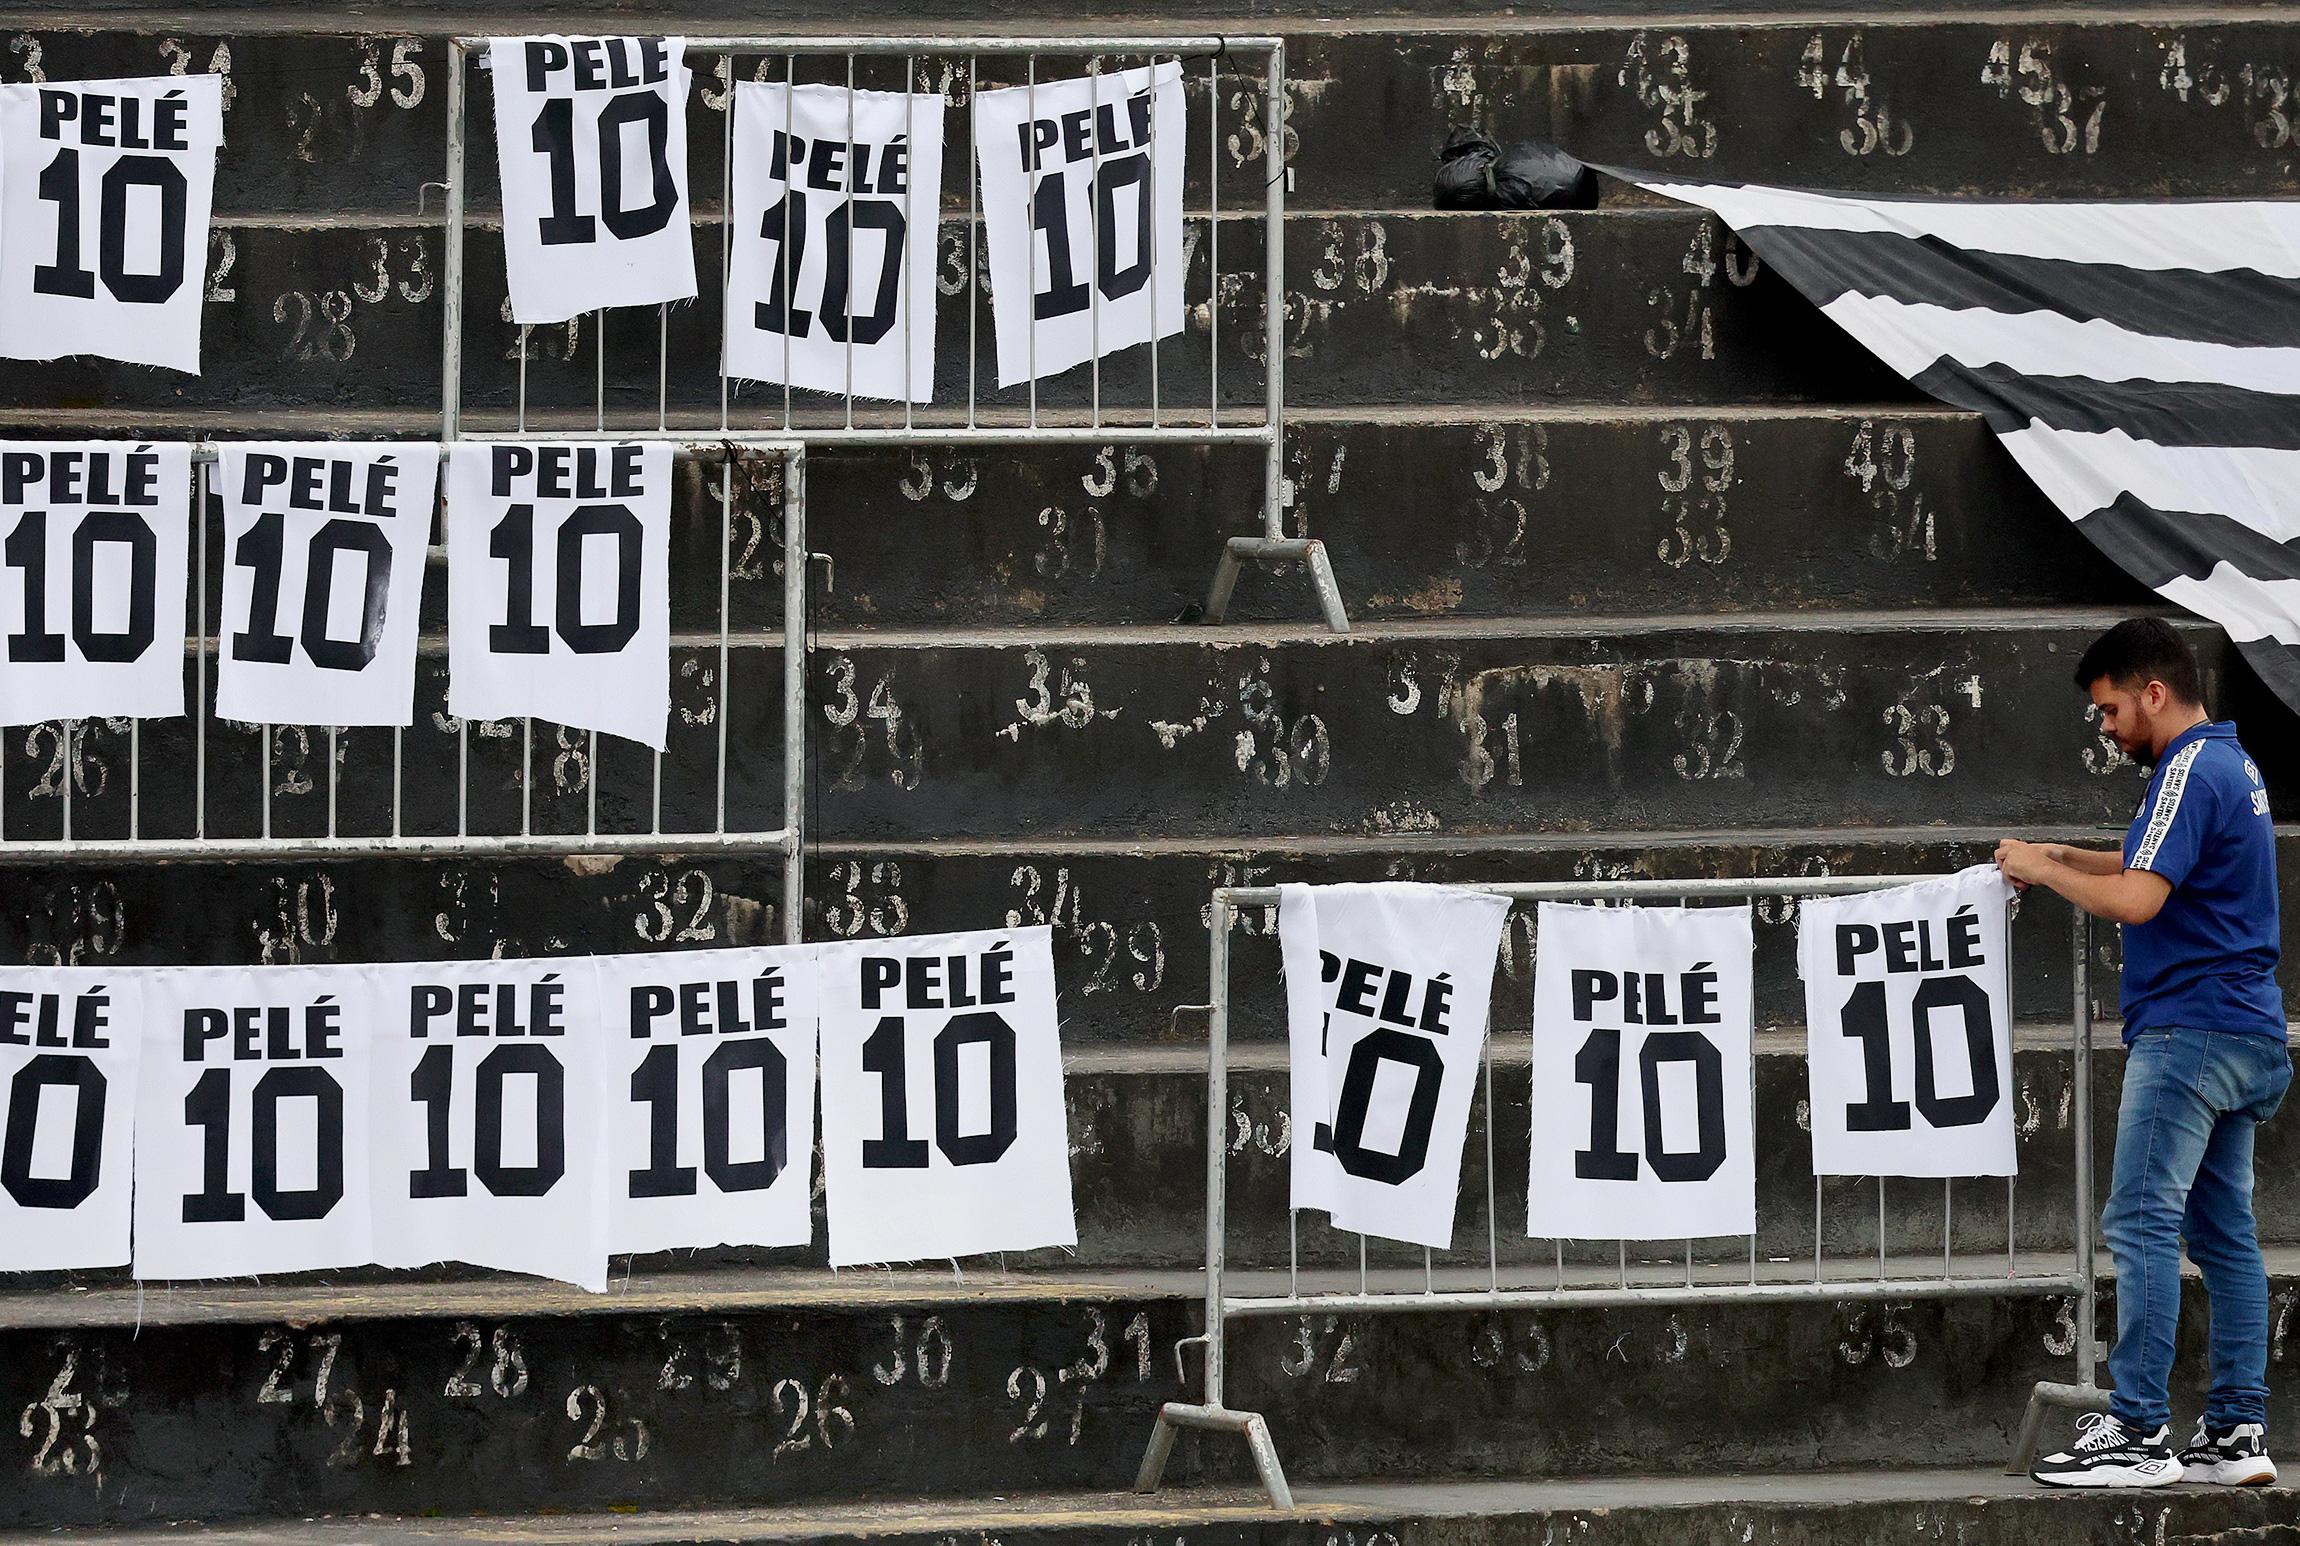 С утра шла подготовка стадиона: люди вывешивали плакаты с фамилией Пеле и номером 10. Ранее в бразильском &laquo;Сантосе&raquo; сообщили, что не собираются выводить из обращения десятый номер, под которым прославился Пеле. По словам президента &laquo;Сантоса&raquo; Андреса Руэда, в последние дни было обнаружено интервью, которое Пеле дал в 2017 году. В нем его прямо спрашивали о возможности того, что Сантос уберет из обращения номер 10. &laquo;Он (Пеле.&nbsp;&mdash; РБК) ясно сказал, что ему не нравится эта идея&raquo;,&nbsp;&mdash; отметил Руэда